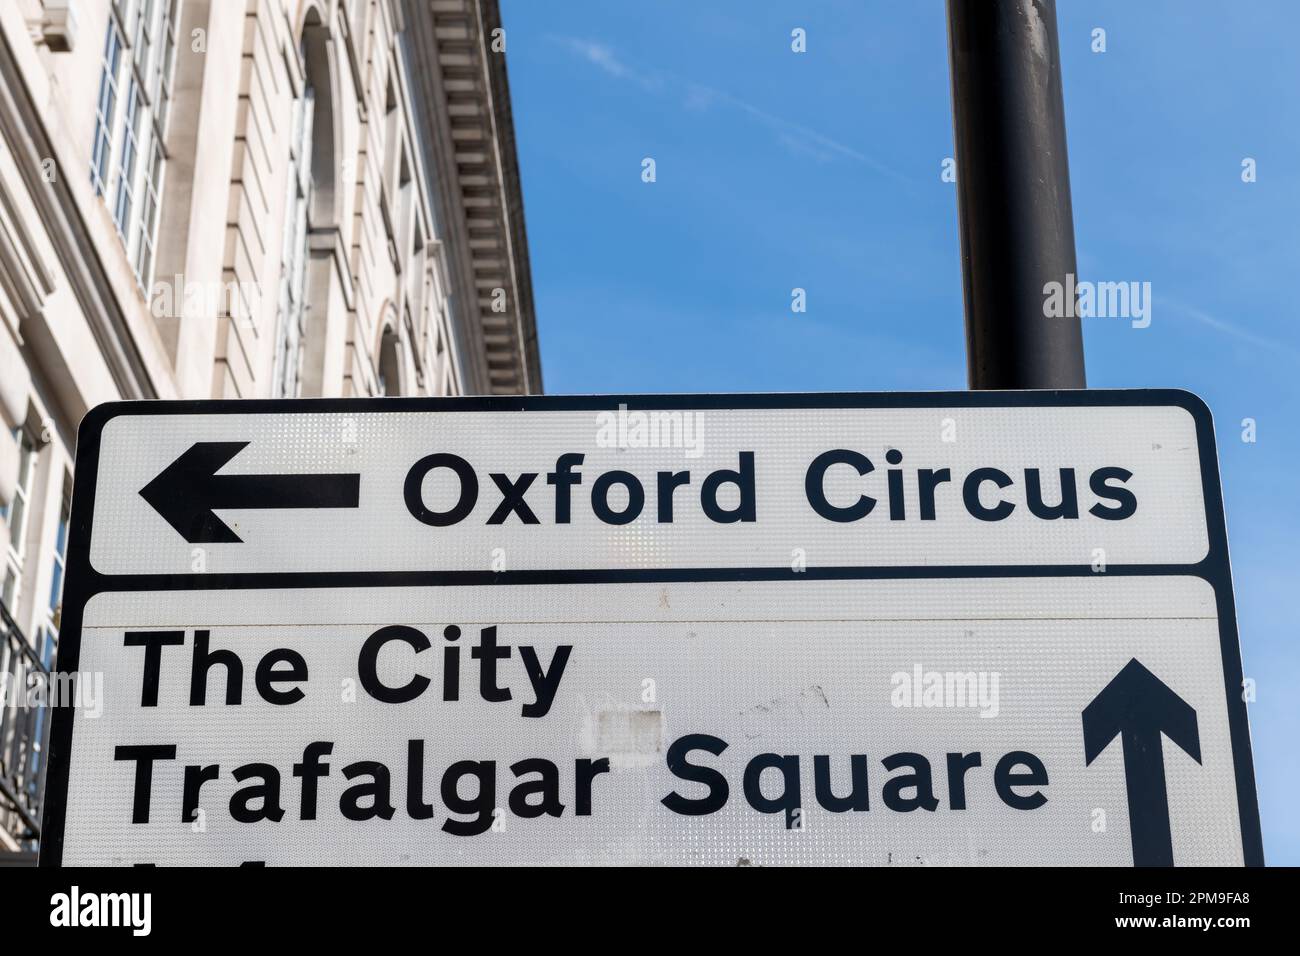 Straßenschild für Oxford Circus, City und Trafalgar Square. Berühmte Reiseziele in London, Großbritannien. Stockfoto